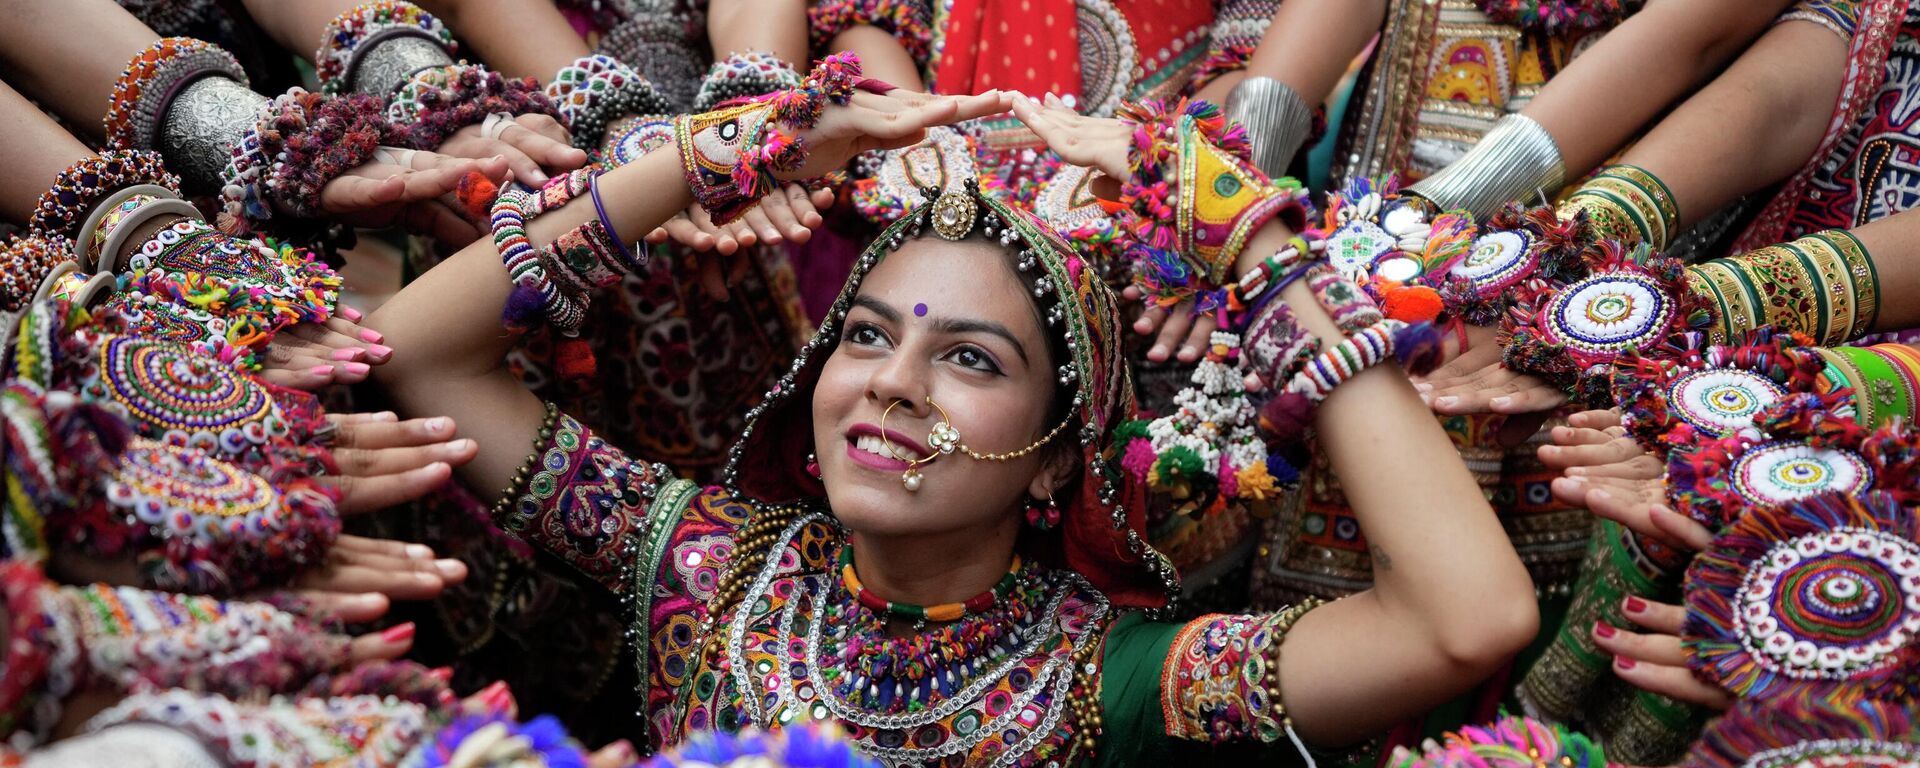 النساء اللائي يرتدين الزي التقليدي يقفن لالتقاط الصور أثناء ممارستهن رقصة الجاربا، وهي الرقص التقليدي لولاية غوجارات، قبل نافراتري في أحمد آباد، الهند، 20 سبتمبر 2022. - سبوتنيك عربي, 1920, 10.04.2023